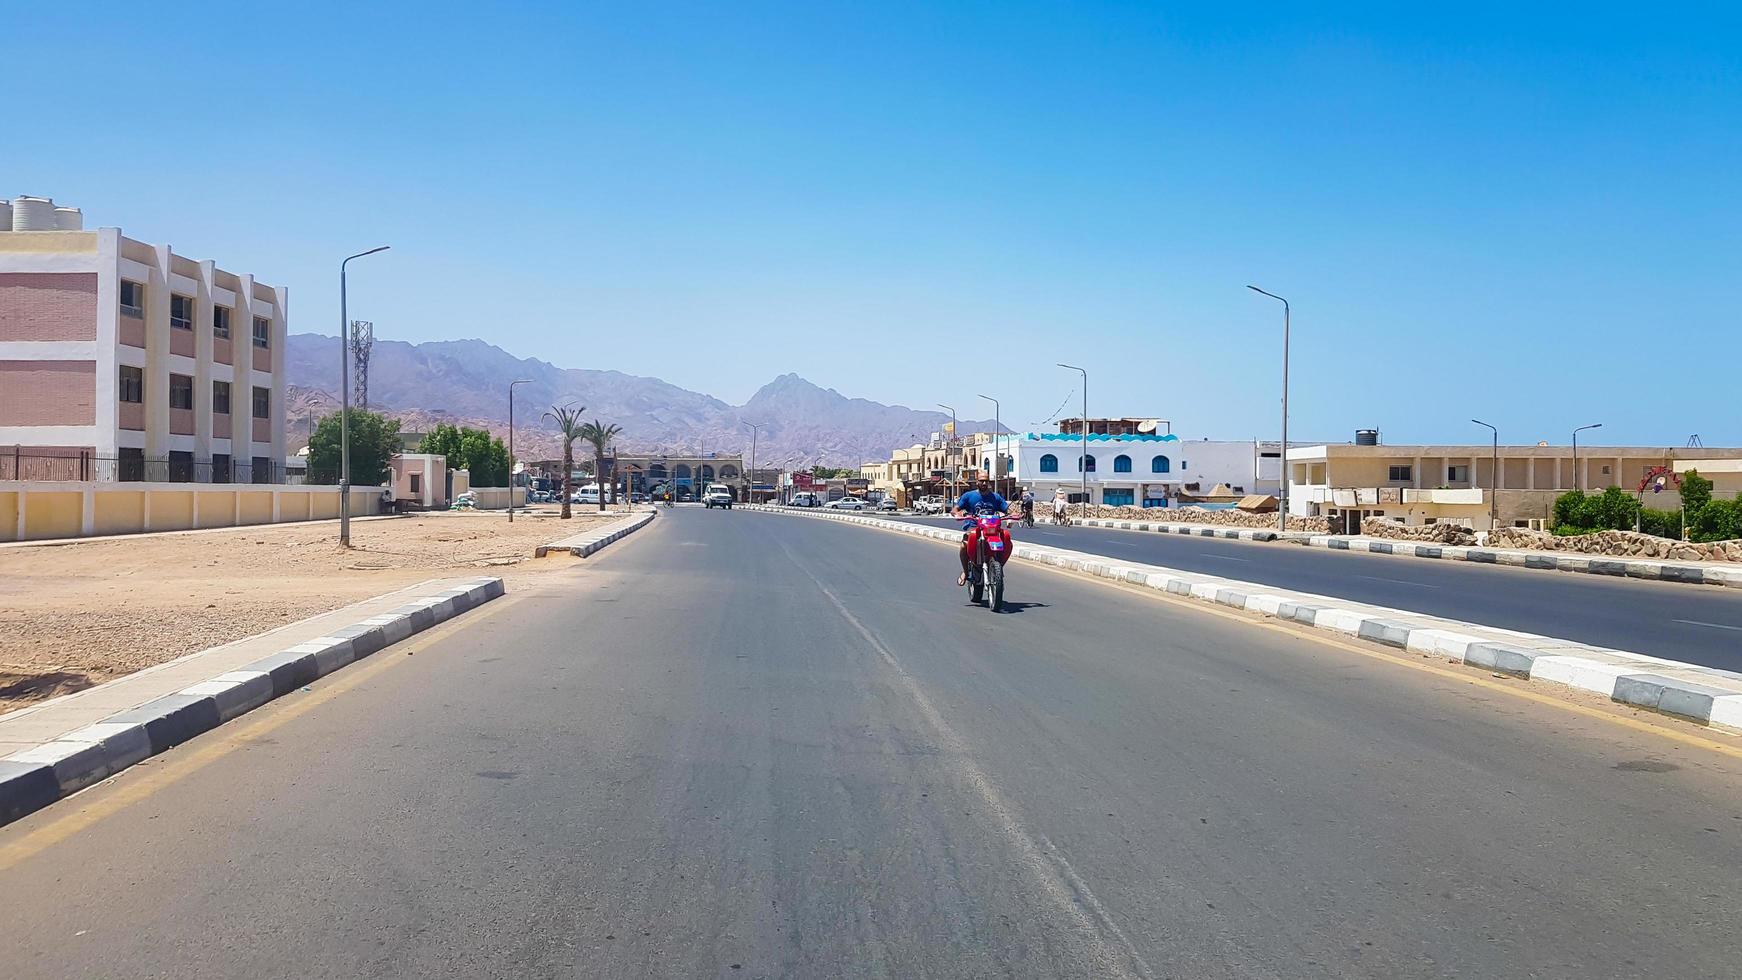 egypte, dahab - 20 juni 2019. een arabier rijdt op een scooter langs een van de straten van dahab. woestijn straat. Egyptische woongebouwen. de stad dahab. foto